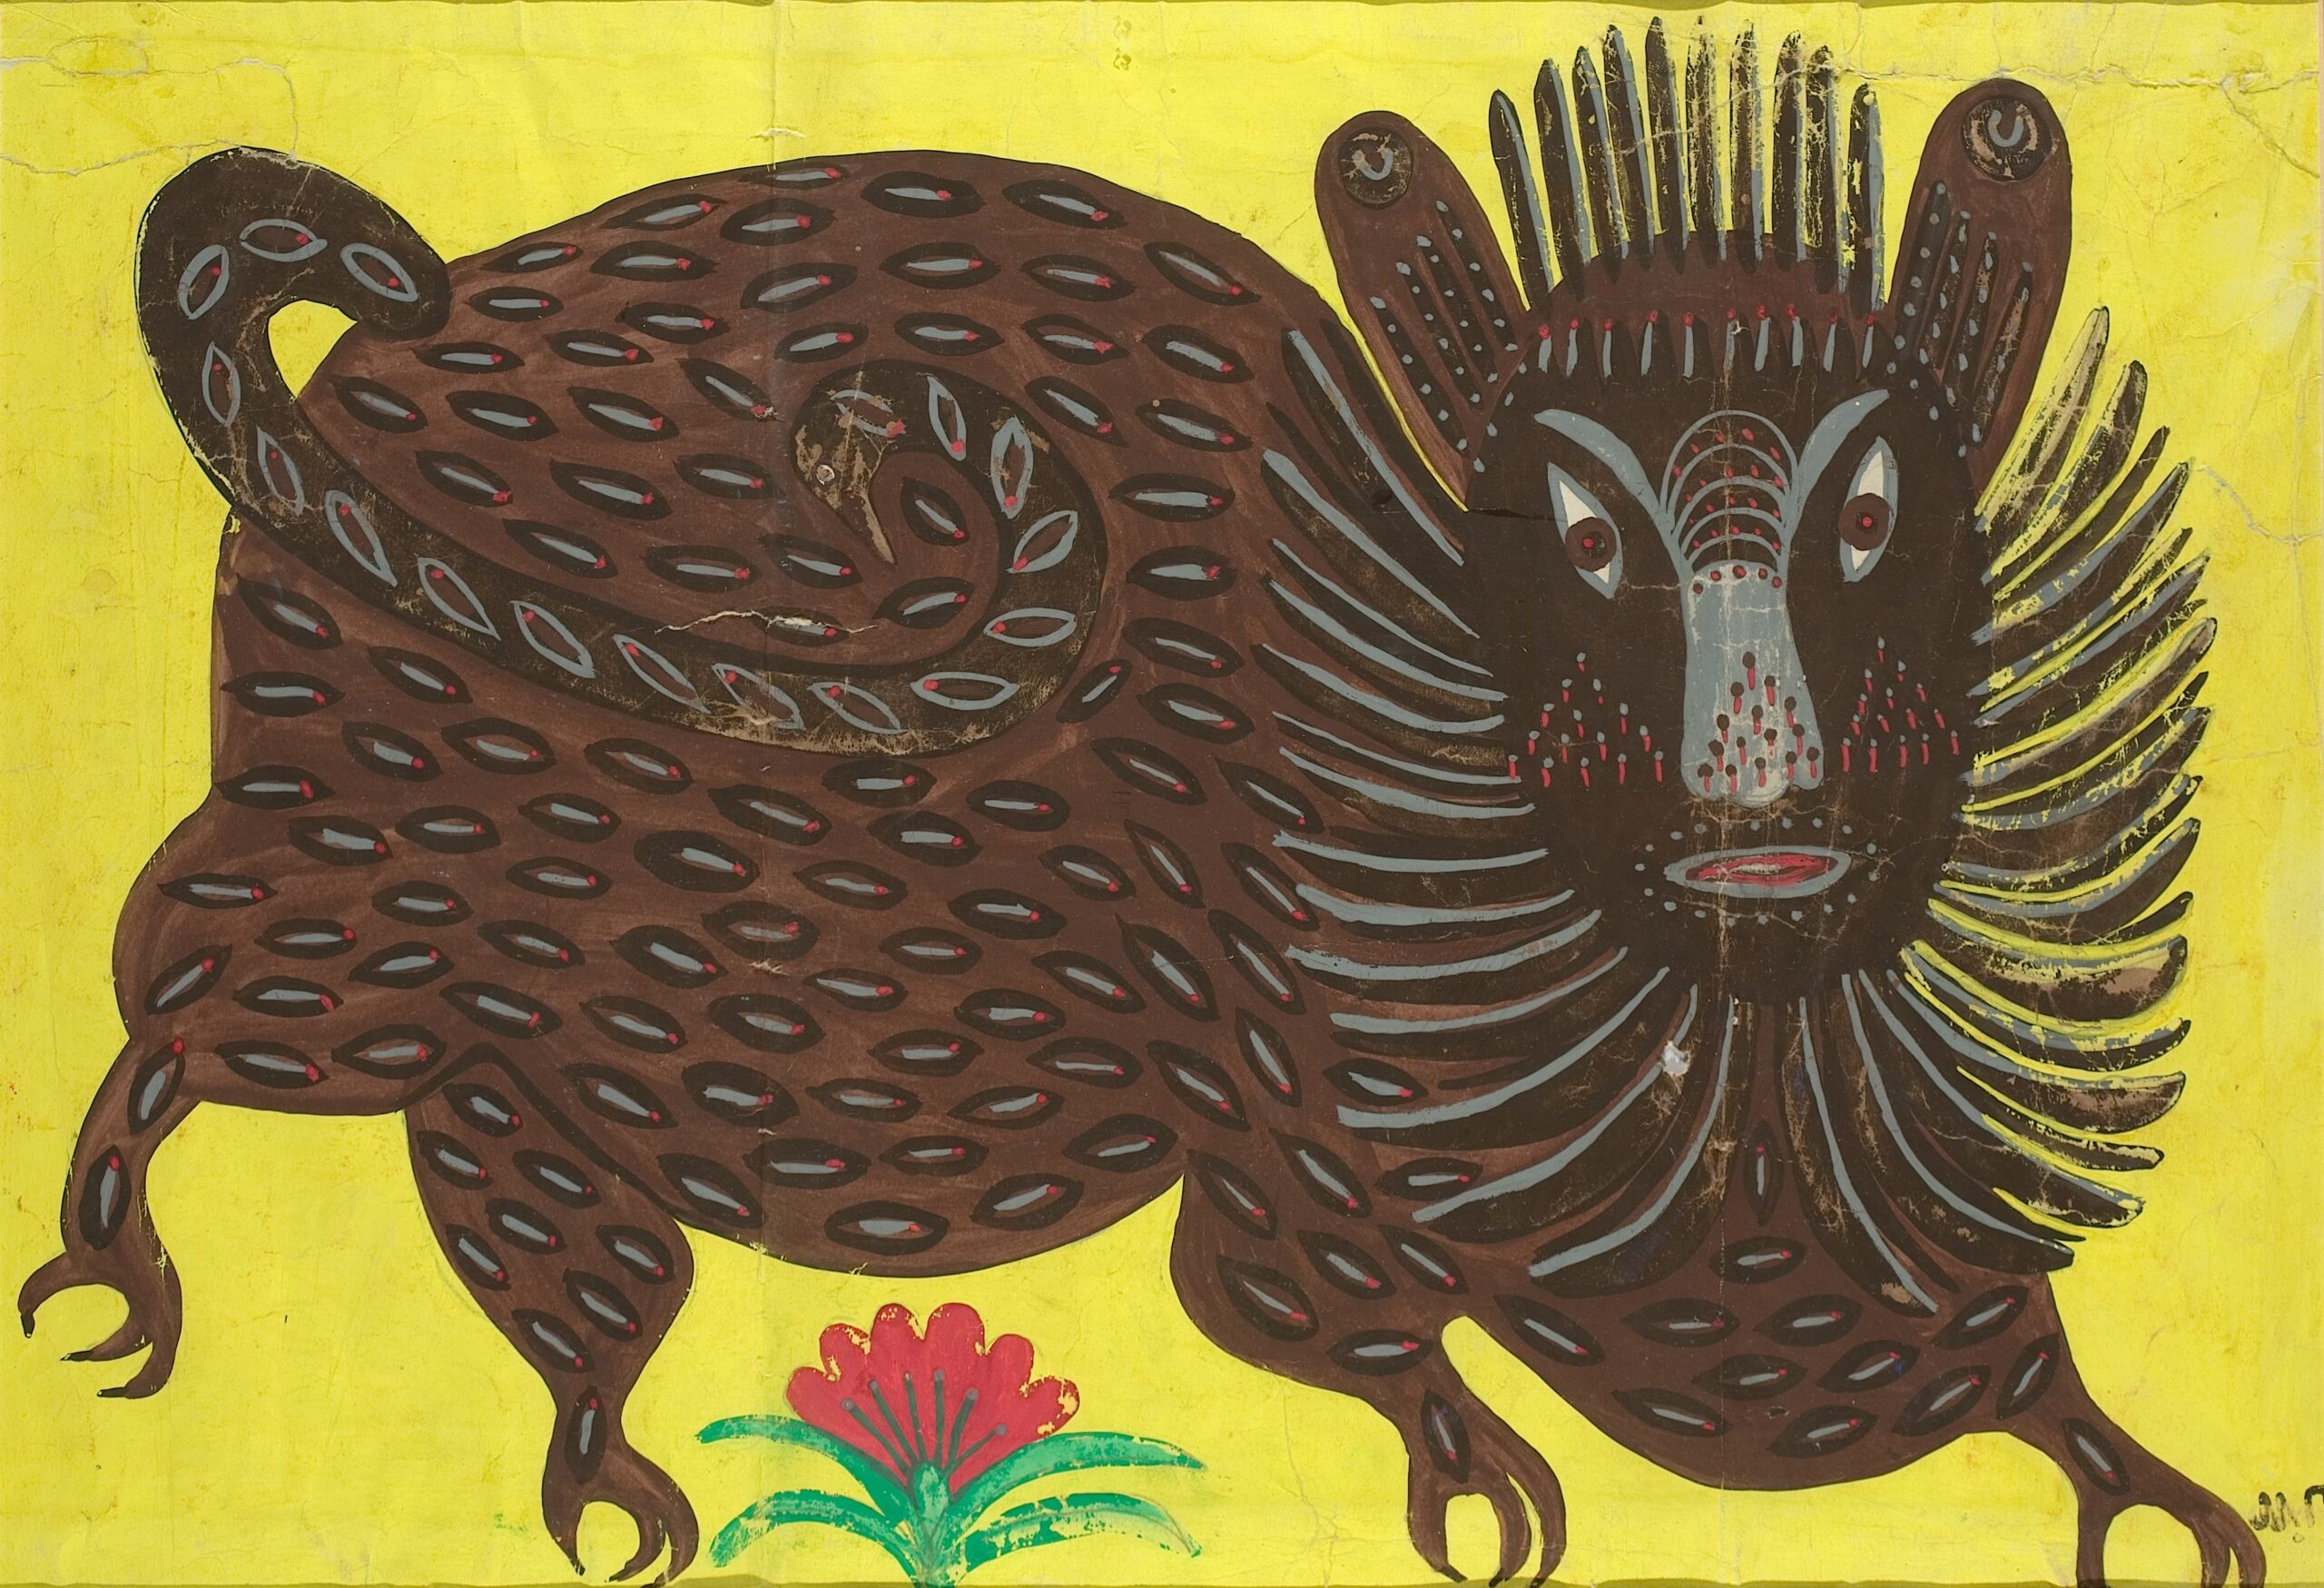 Das Bild ist ein Kunstwerk von Maria Prymachenko. Es zeigt eine Bestie in brauner Farbe vor einem grell gelben Hintergrund. Die Bestie hat eine Mähne ähnlich wie ein Löwe und hat vier kräftige Beine. in der Mitte am unteren Bildrand wächst zwischen den Beinen eine rote Blume.